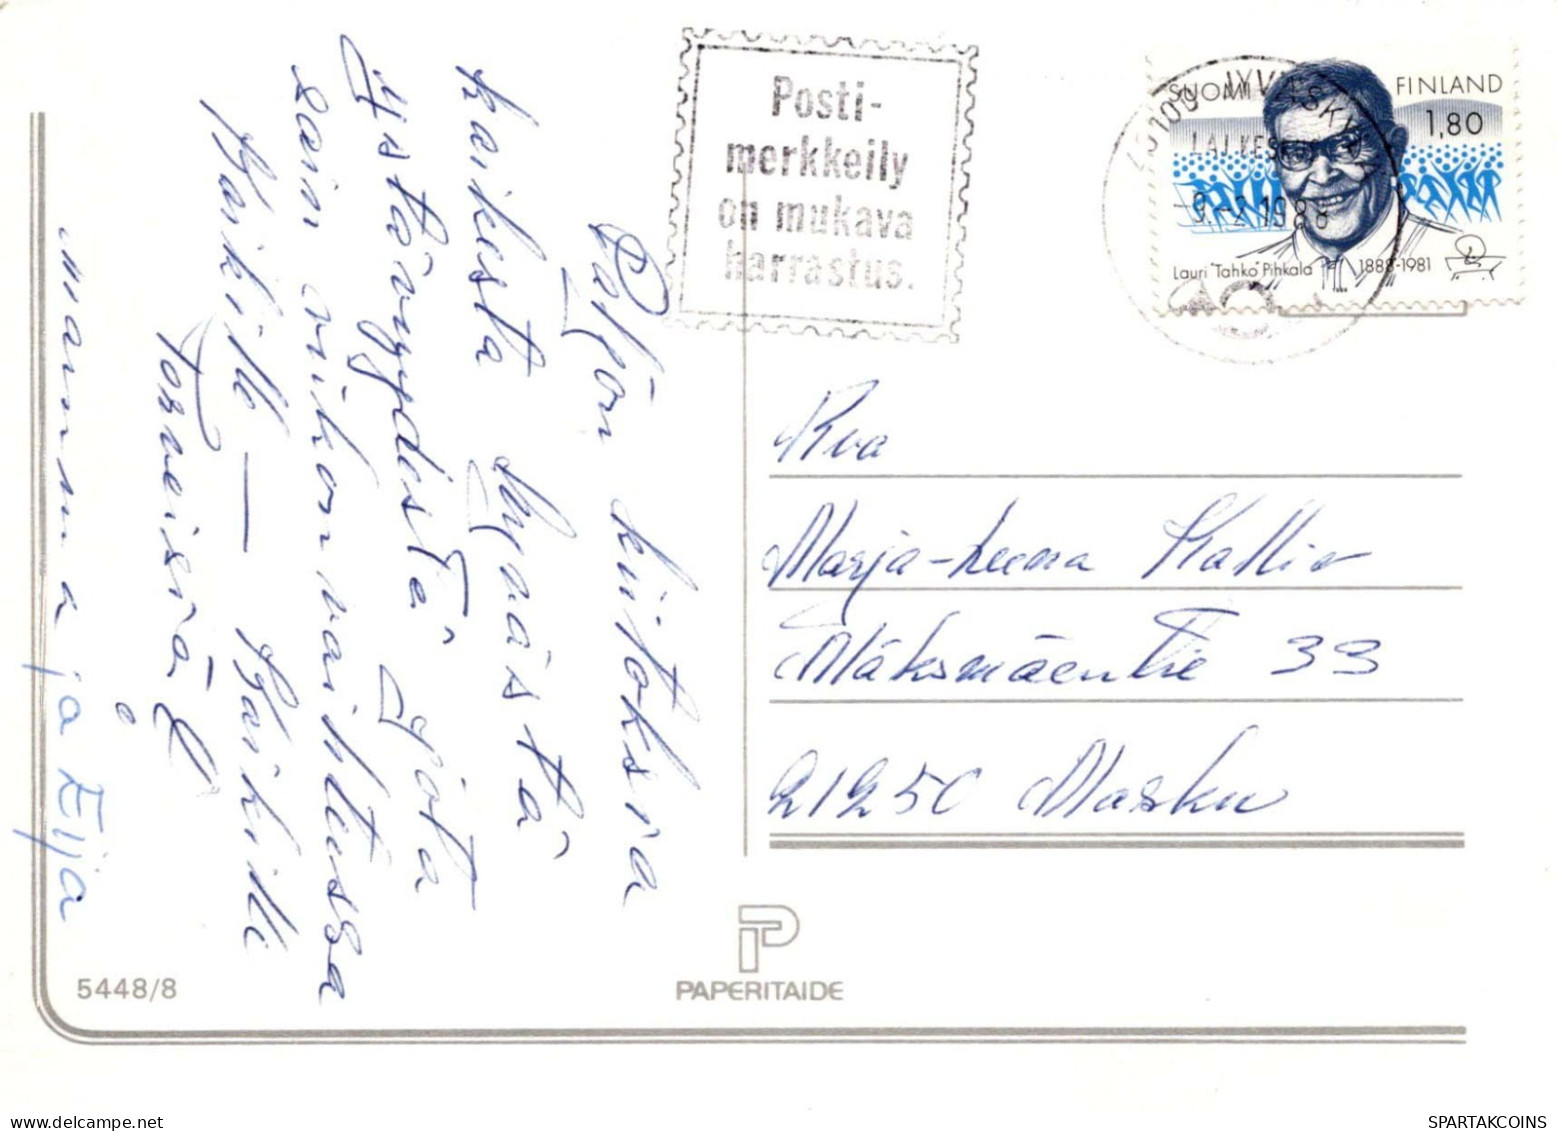 NIÑOS NIÑOS Escena S Paisajes Vintage Tarjeta Postal CPSM #PBU354.ES - Scenes & Landscapes